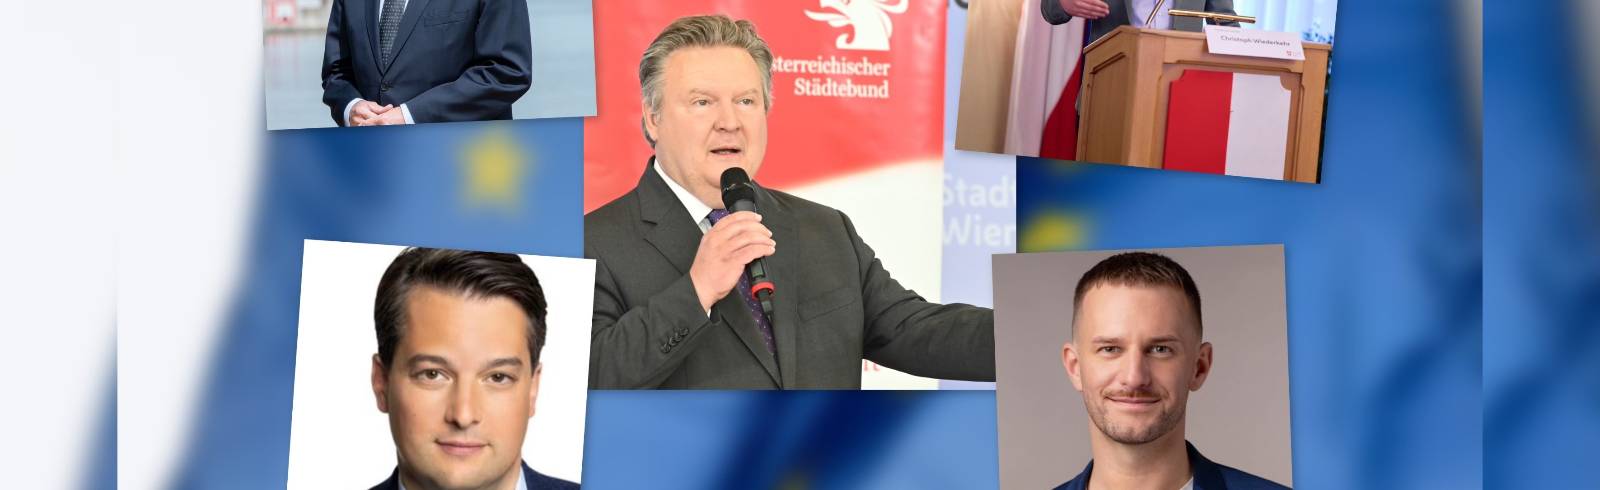 EU-Wahl: Bürgermeister sieht gutes Ergebnis für Wien